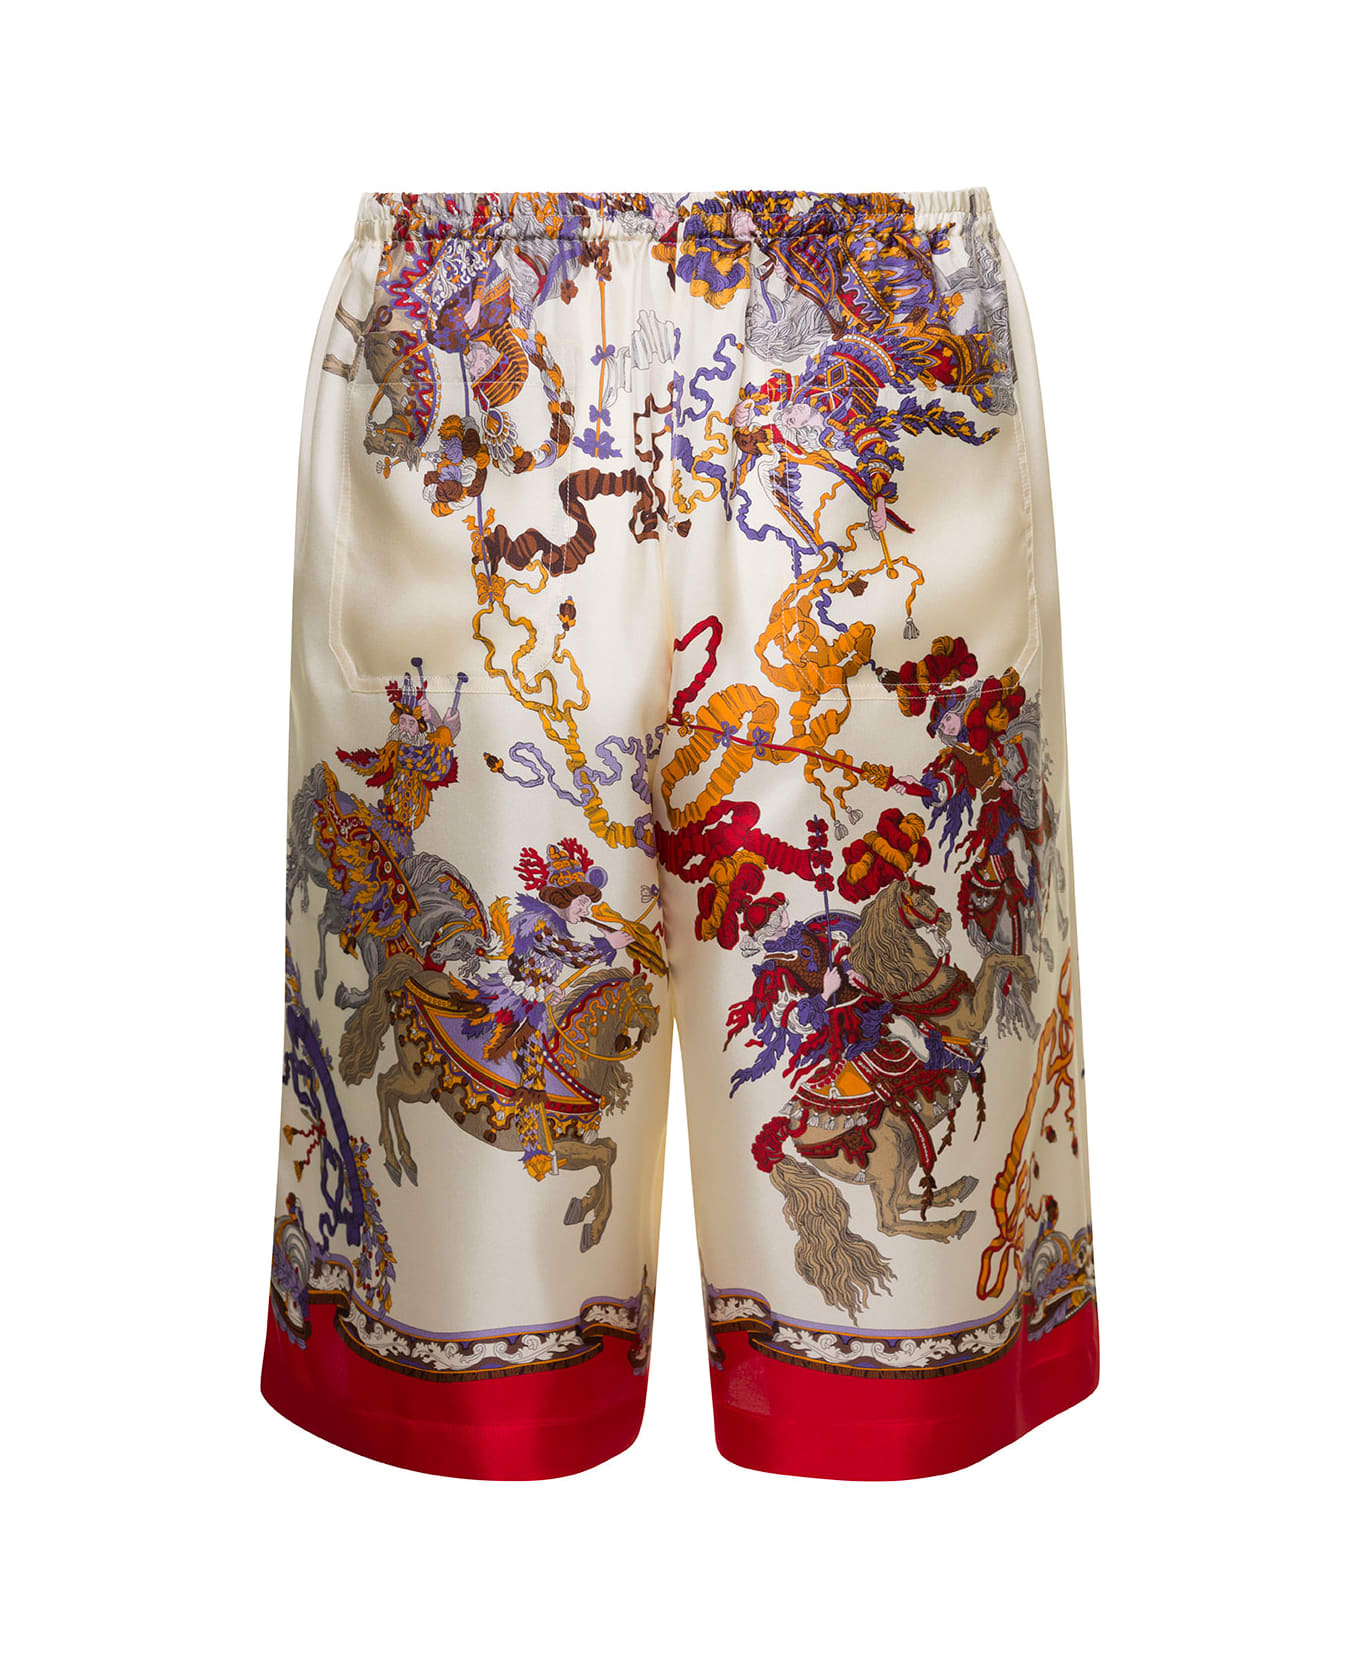 Gucci White Shorts With Graphic Multicolor Print All-over In Silk Man - Multicolor ショートパンツ